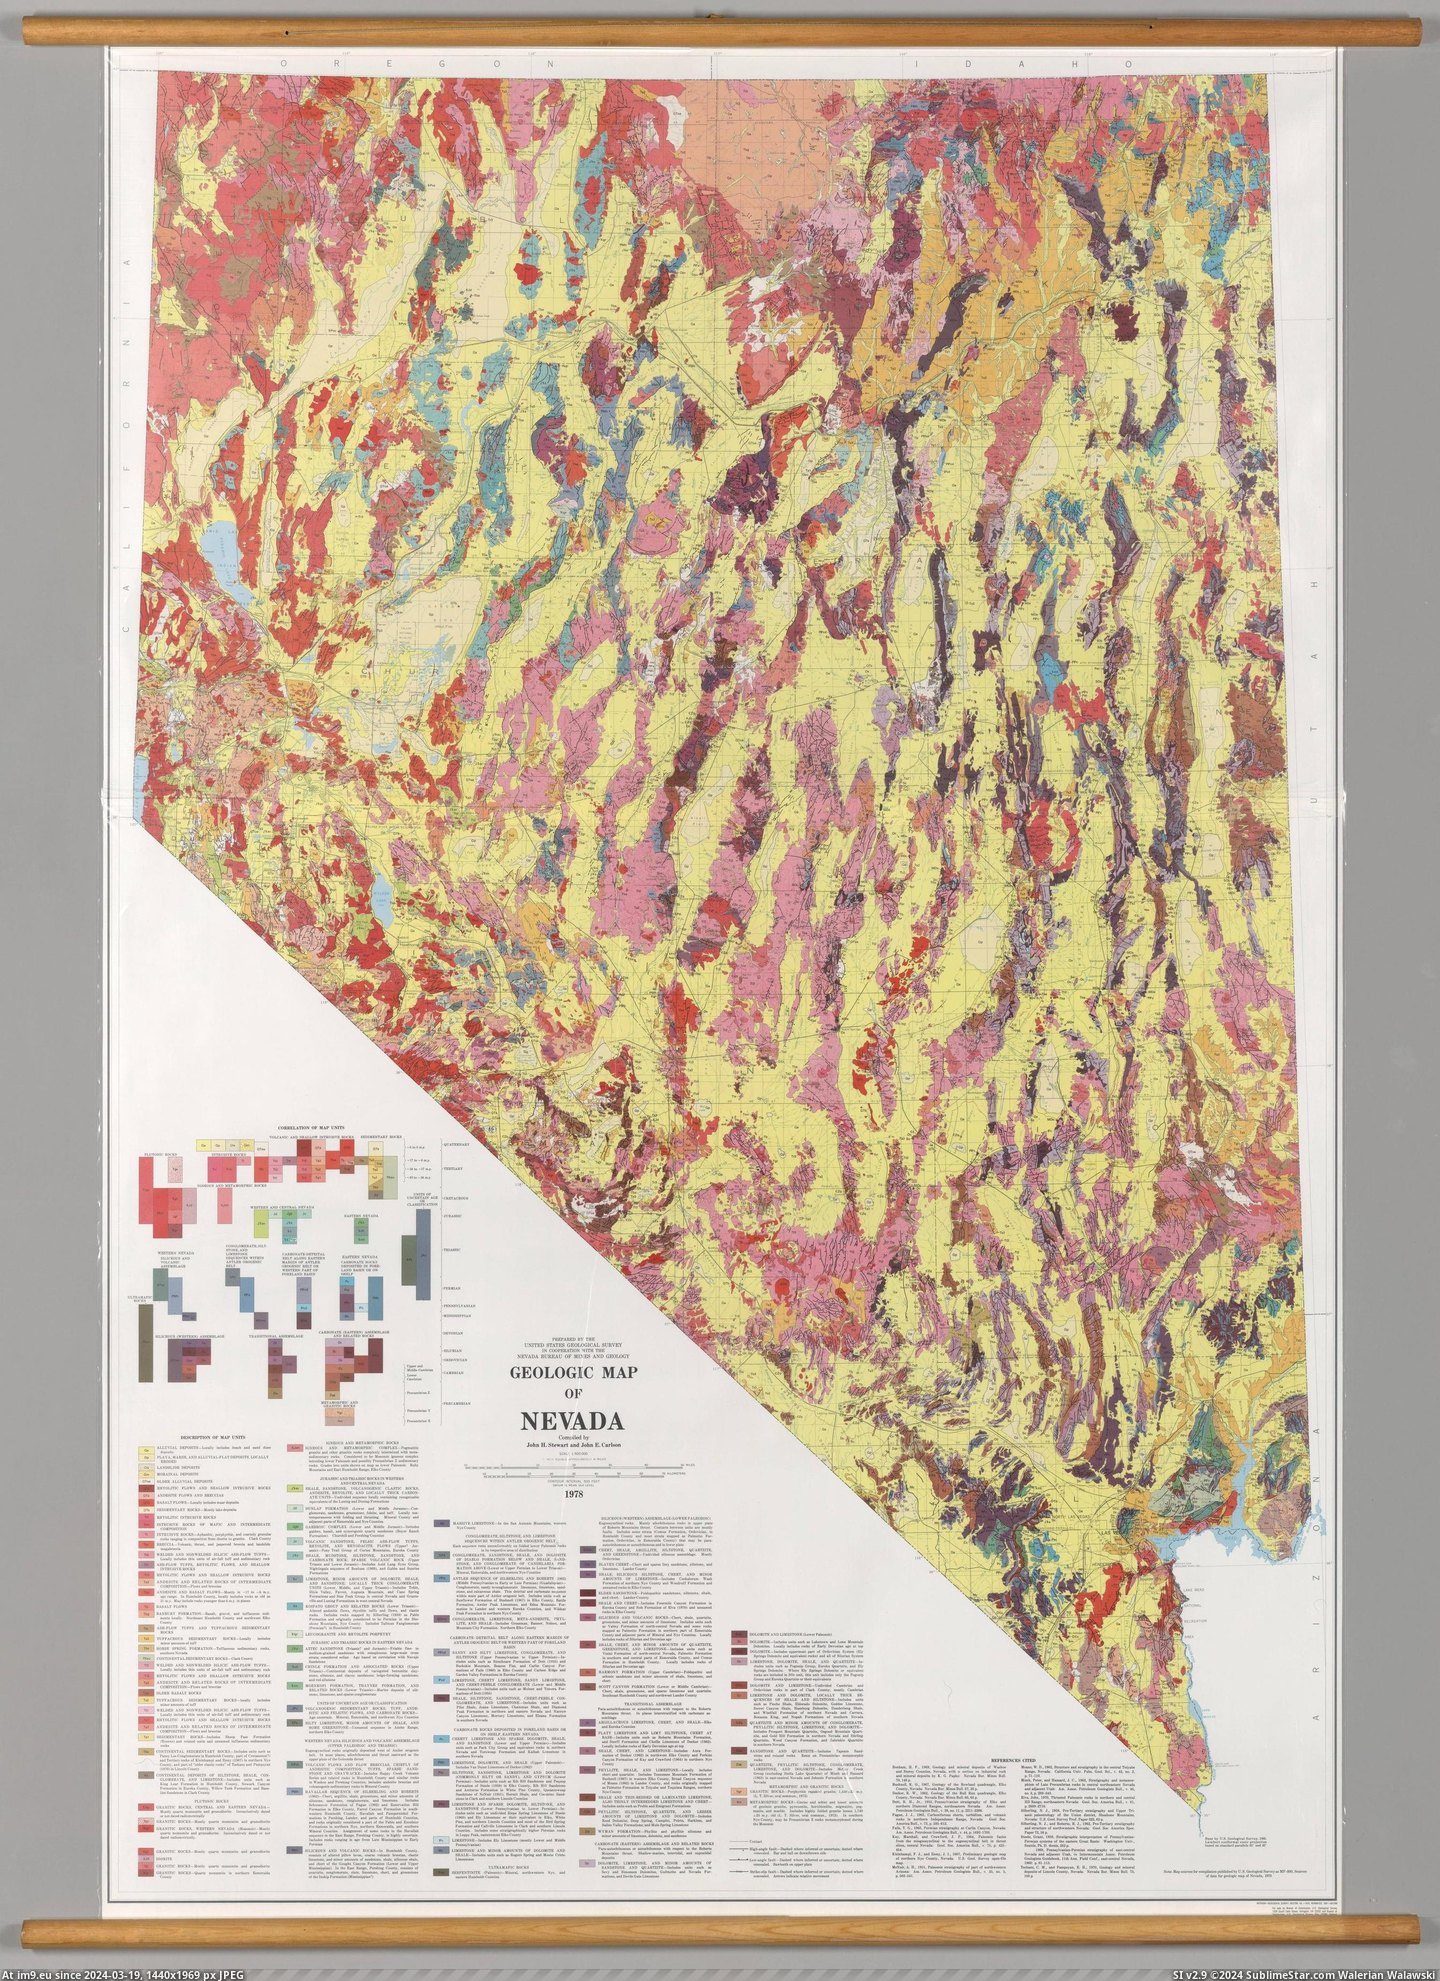 #Map #Nevada #Carlson #Stewart #Geologic [Mapporn] Geologic Map of Nevada, made in 1978 by J. Stewart and J. Carlson [2687x3686] Pic. (Bild von album My r/MAPS favs))